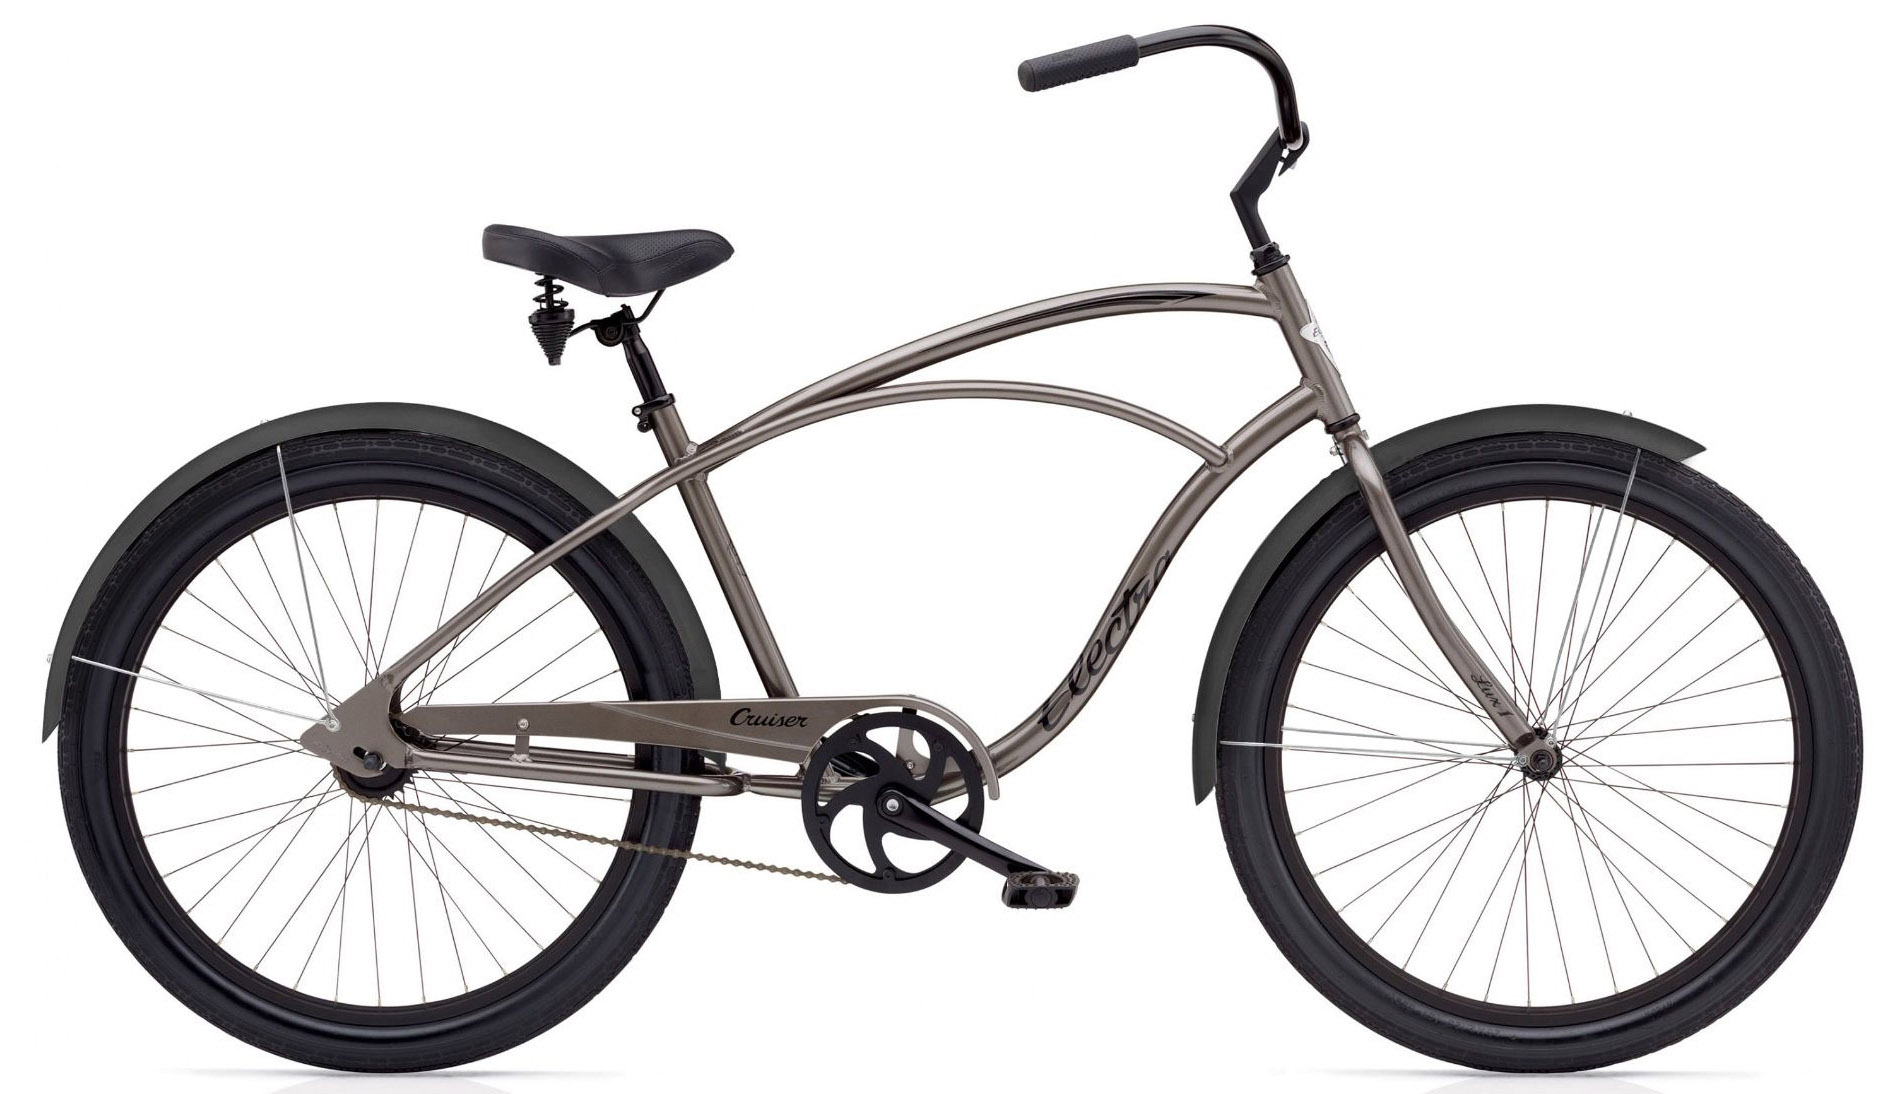  Отзывы о Городском велосипеде Electra Cruiser Lux 1 Mens 2020